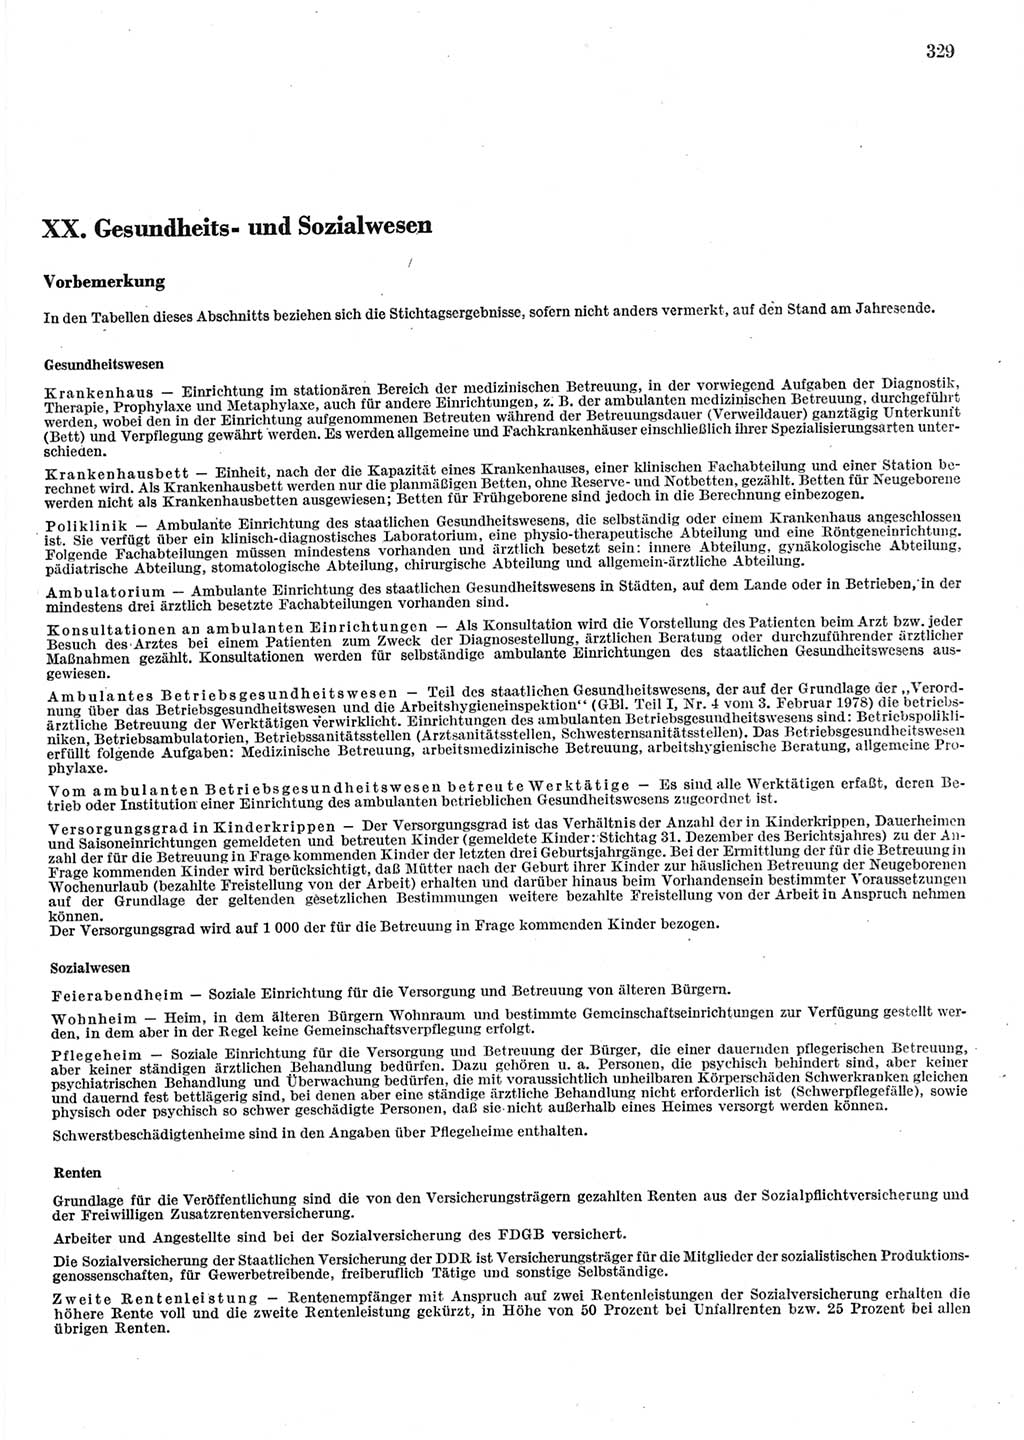 Statistisches Jahrbuch der Deutschen Demokratischen Republik (DDR) 1983, Seite 329 (Stat. Jb. DDR 1983, S. 329)